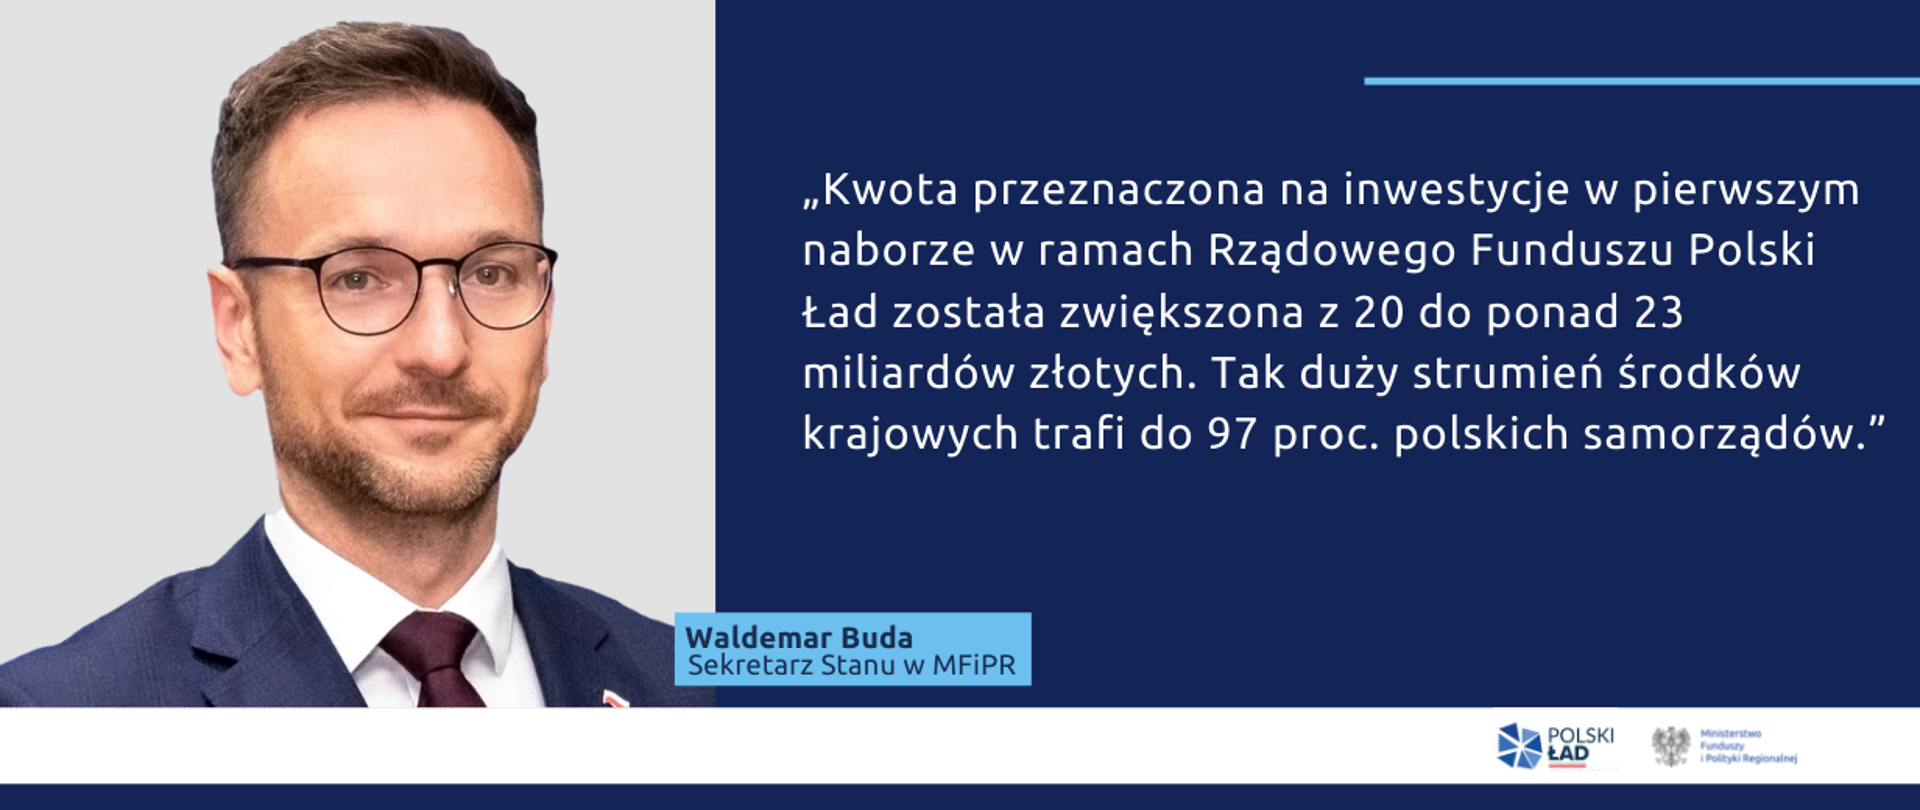 Po lewej zdjęcie Waldemara Budy. Po prawej jego cytat: "Kwota przeznaczona na inwestycje w pierwszym naborze w ramach Rządowego Funduszu Polski Ład została zwiększona z 20 do ponad 23 miliardów złotych. Tak duży strumień środków krajowych trafi do 97 proc. polskich samorządów."